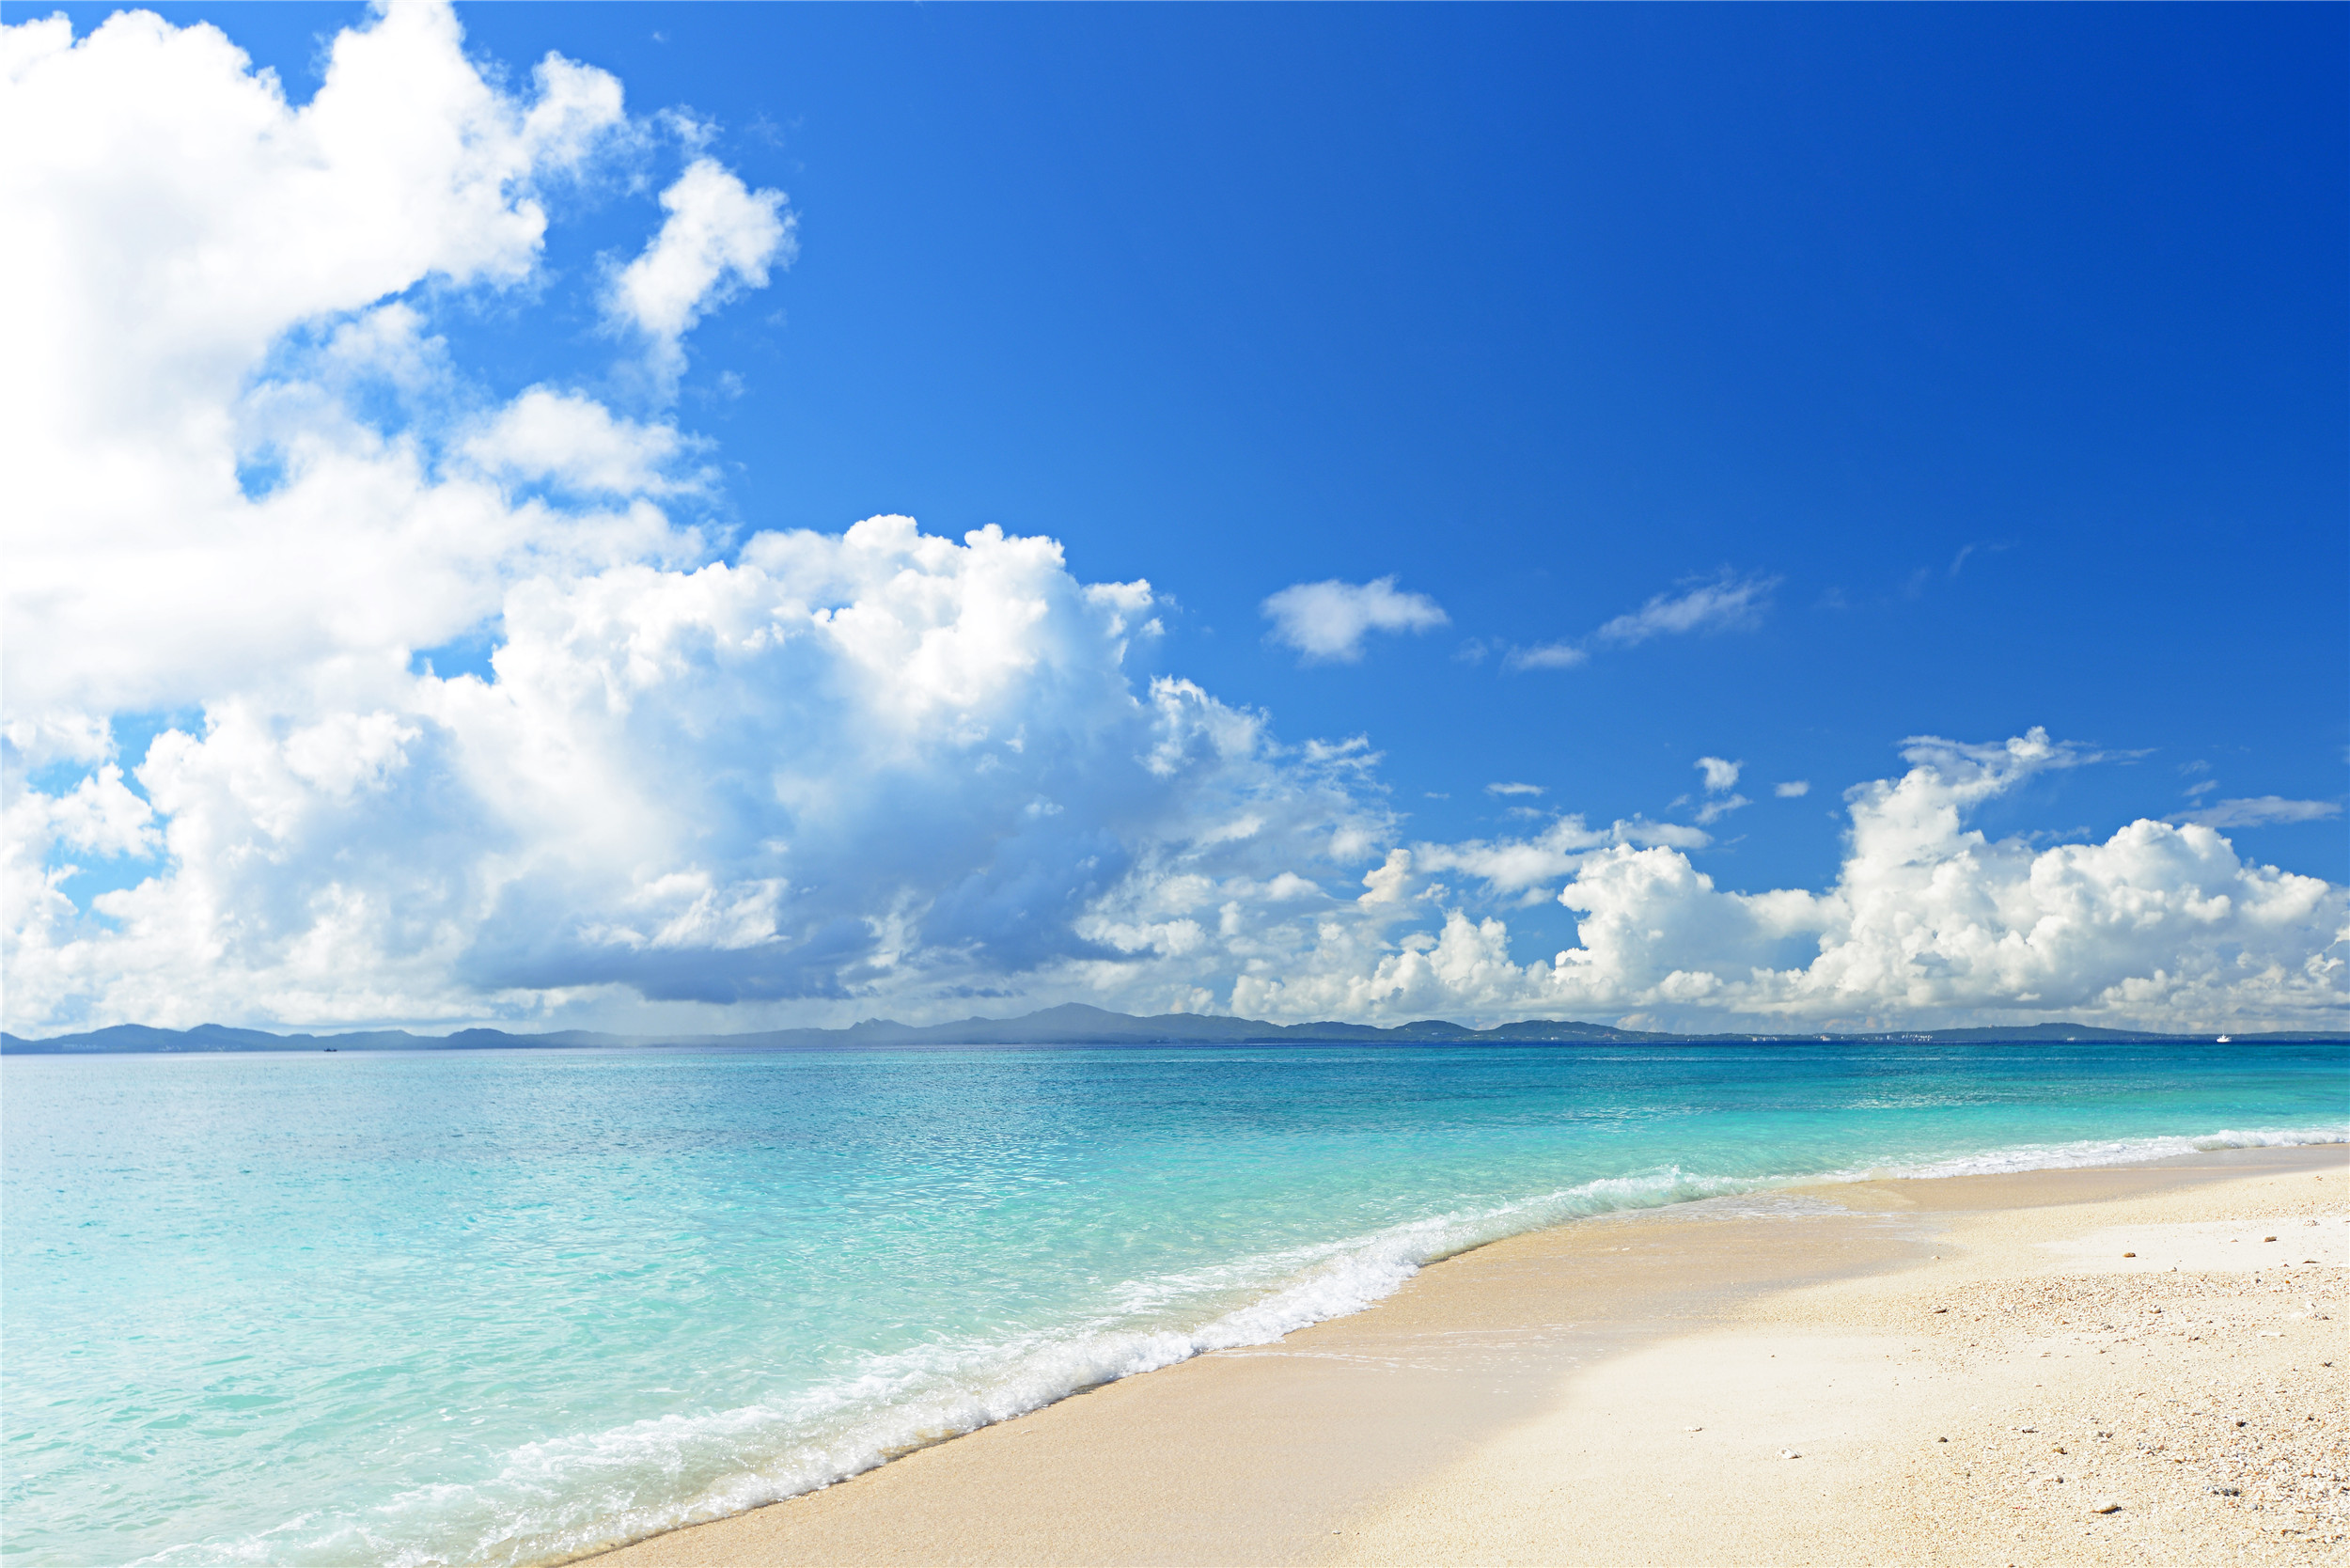 海滩的气魄和神韵:海水的淡蓝,金色的沙滩,飘在天空